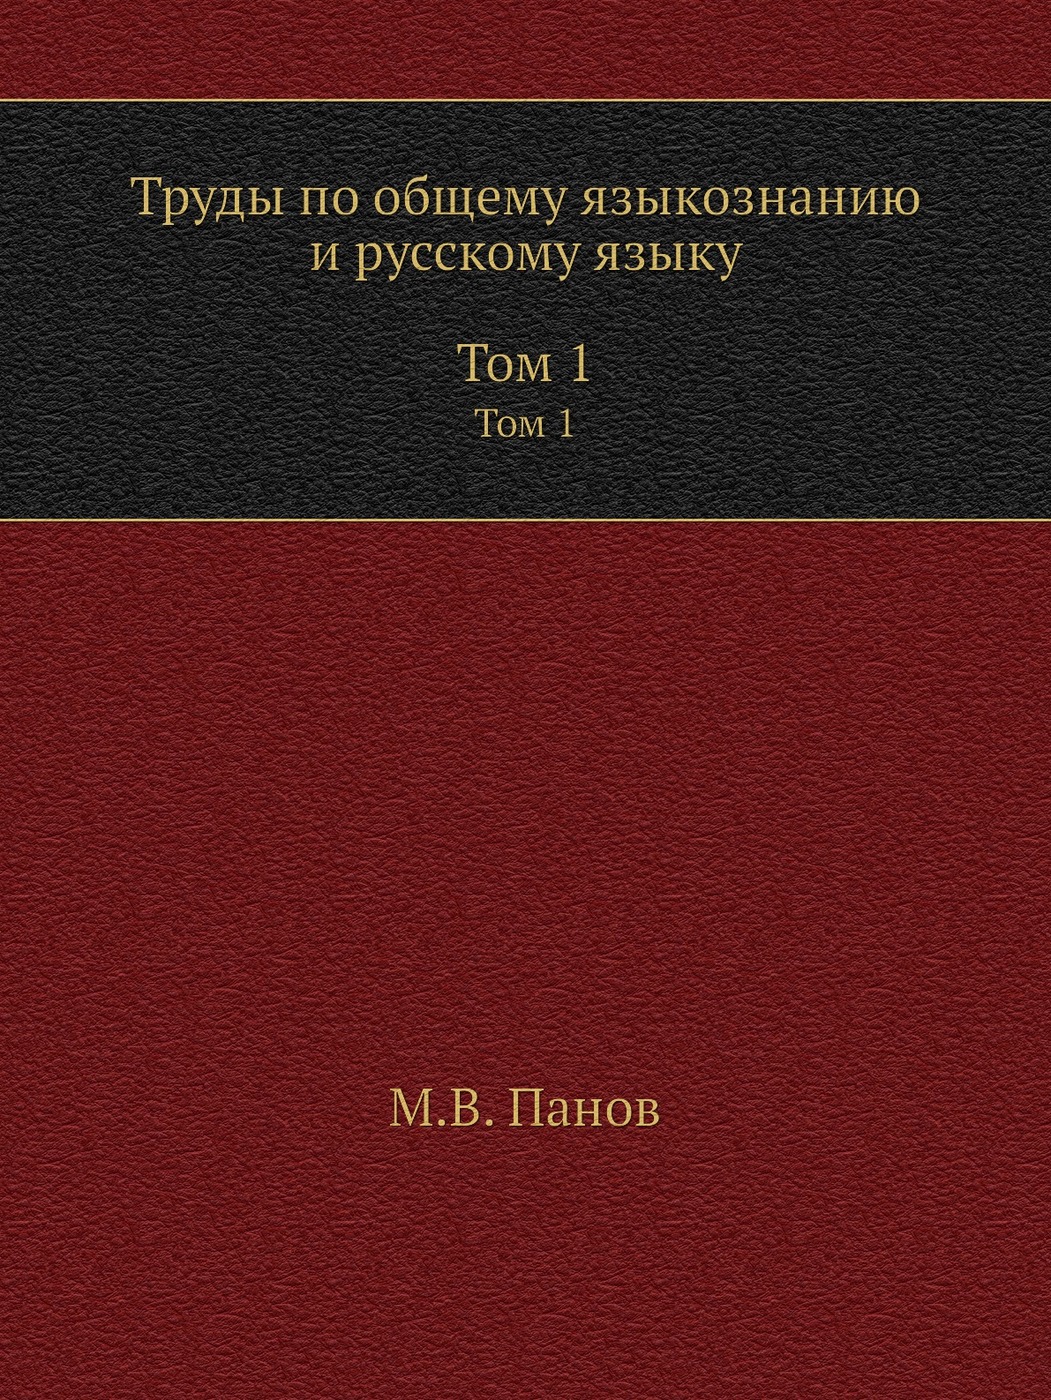 фото Труды по общему языкознанию и русскому языку. В 2 томах. Том 1